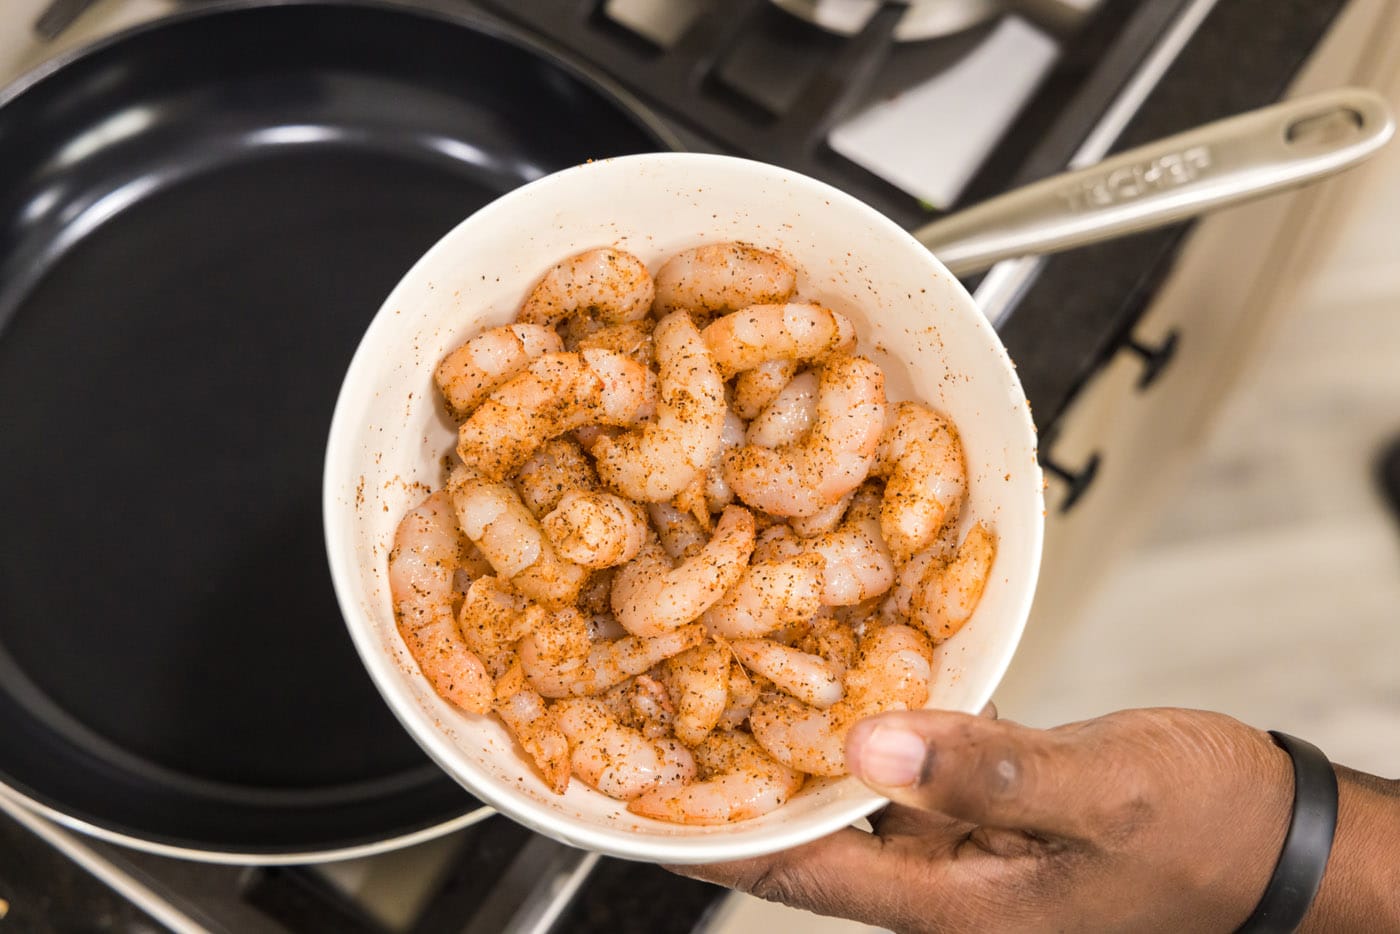 Cajun seasoned shrimp in a bowl